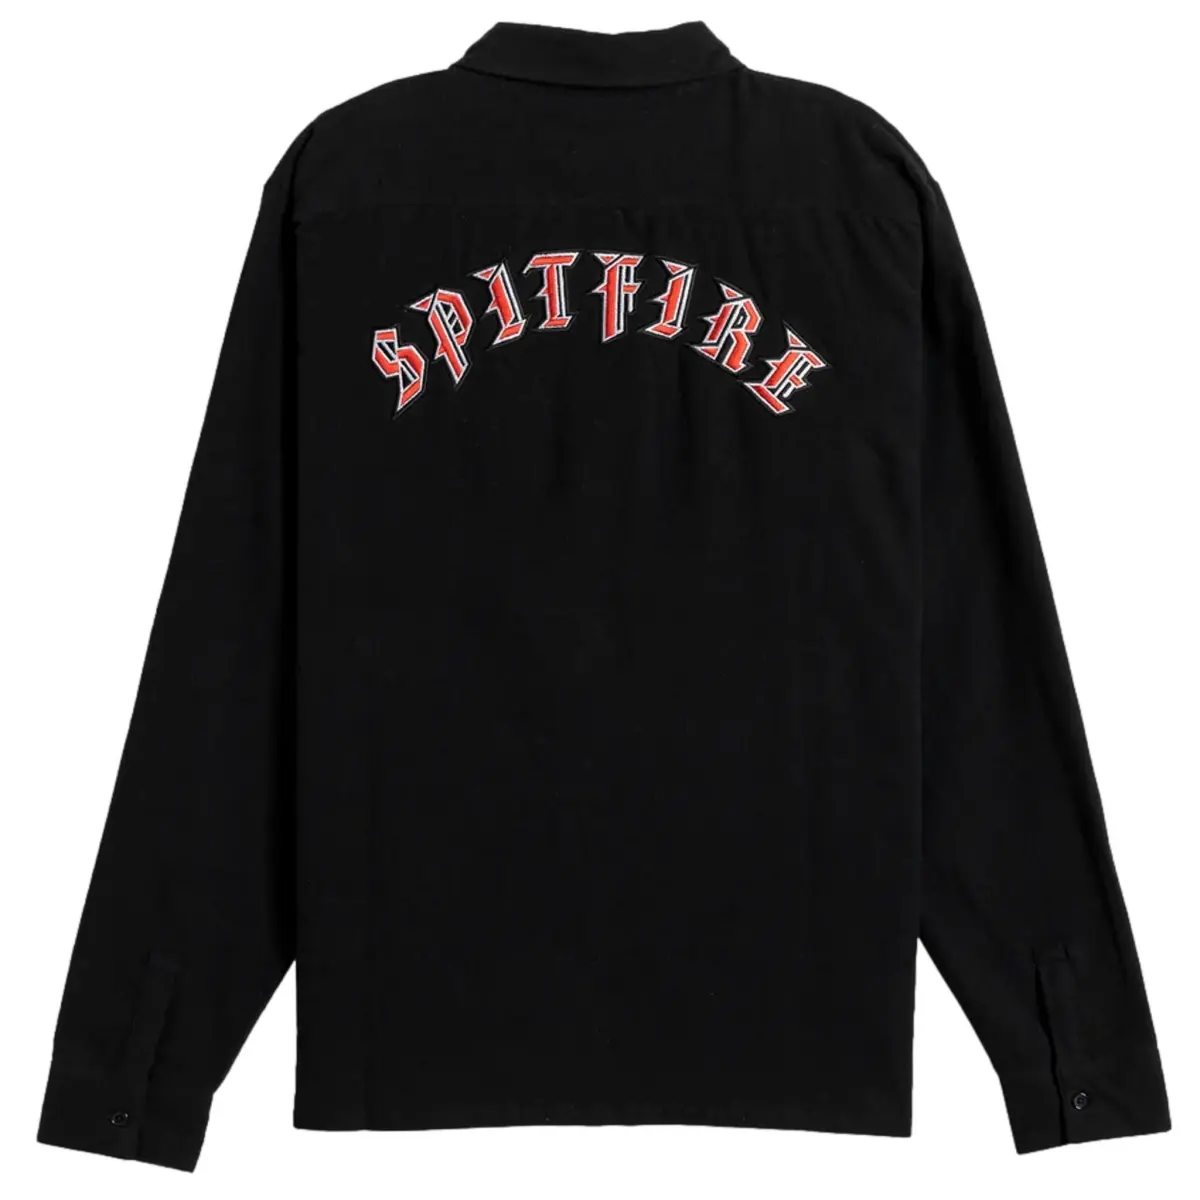 spitfire shirt old emb flanel black